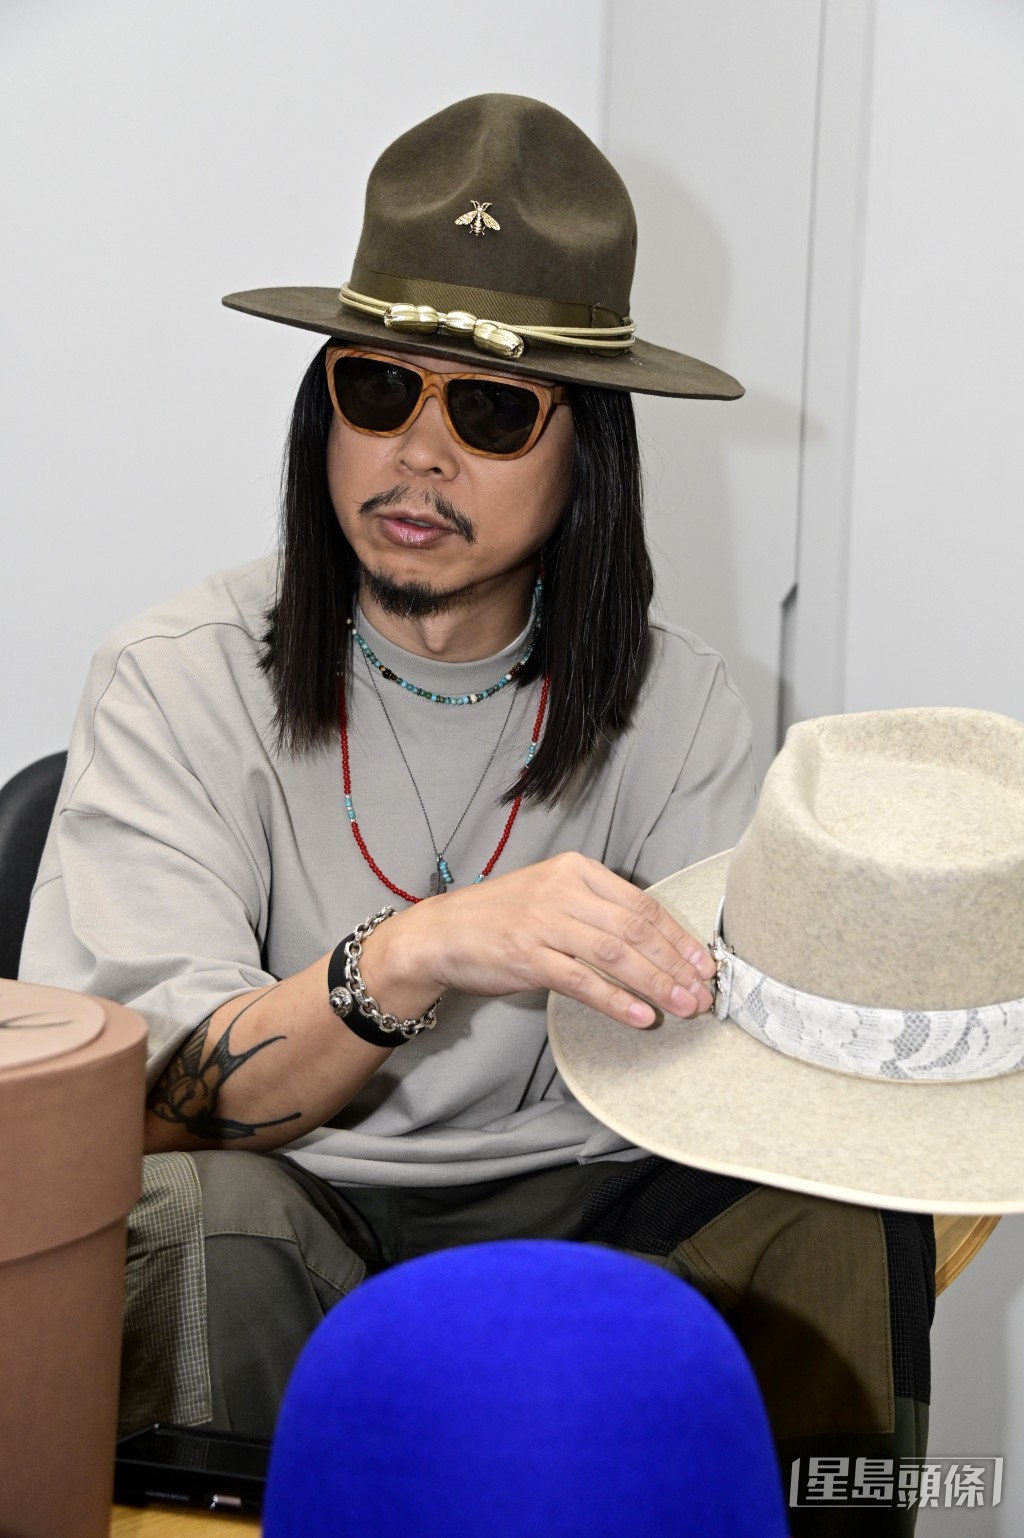 王雙駿當時在演唱會擔任服裝的朋友。專登為這個騷設計了這章：「有啲扣咗喺件衫，我咪扣咗喺頂帽。」